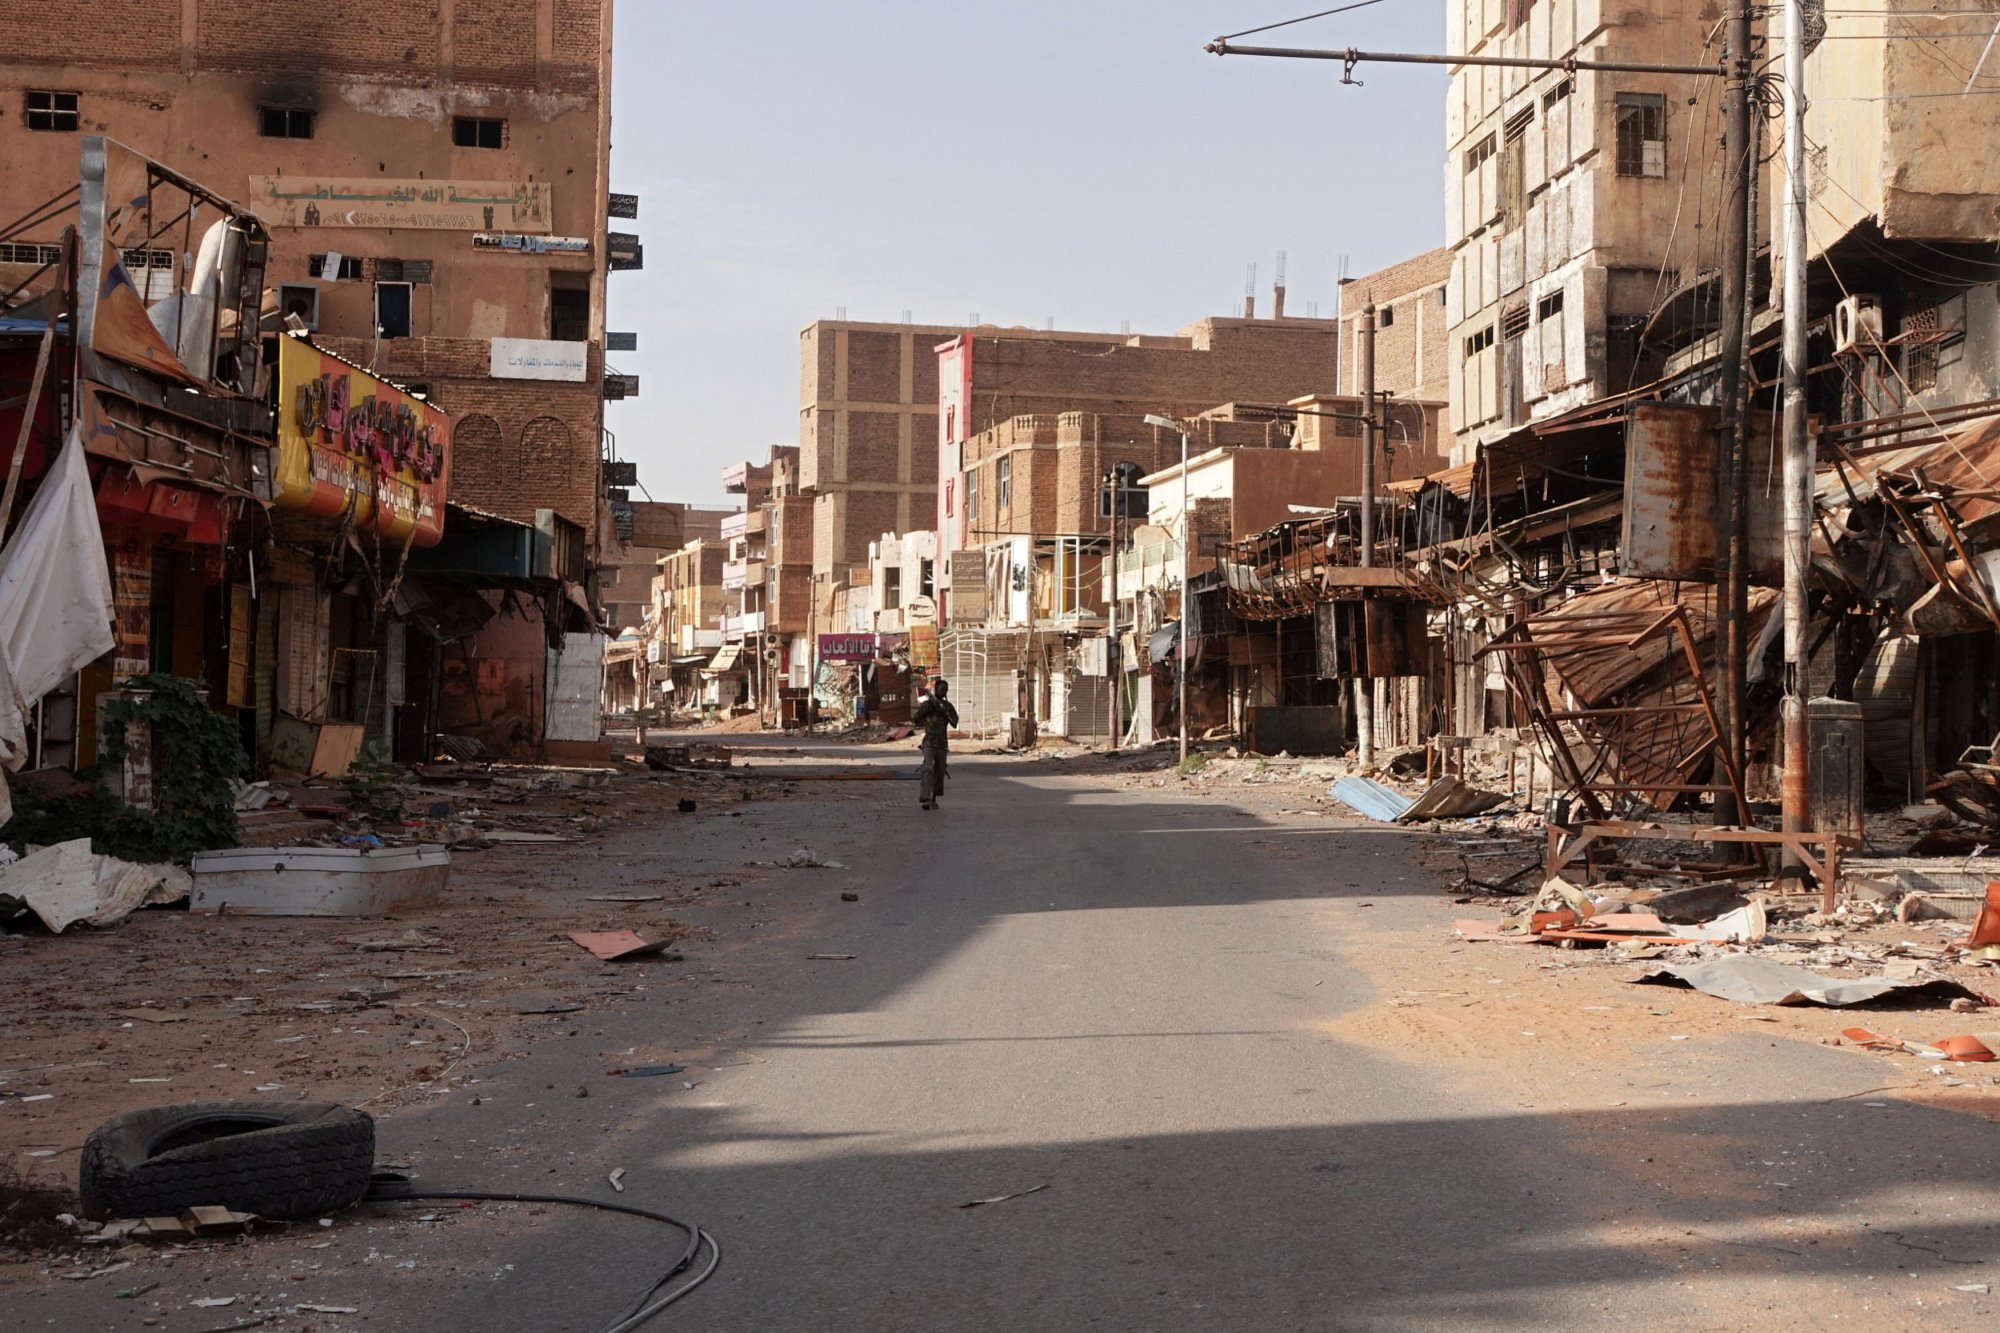 Σουδάν: 22 νεκροί σε επίθεση εναντίον πόλης που πολιορκούν οι παραστρατιωτικοί στο Νταρφούρ